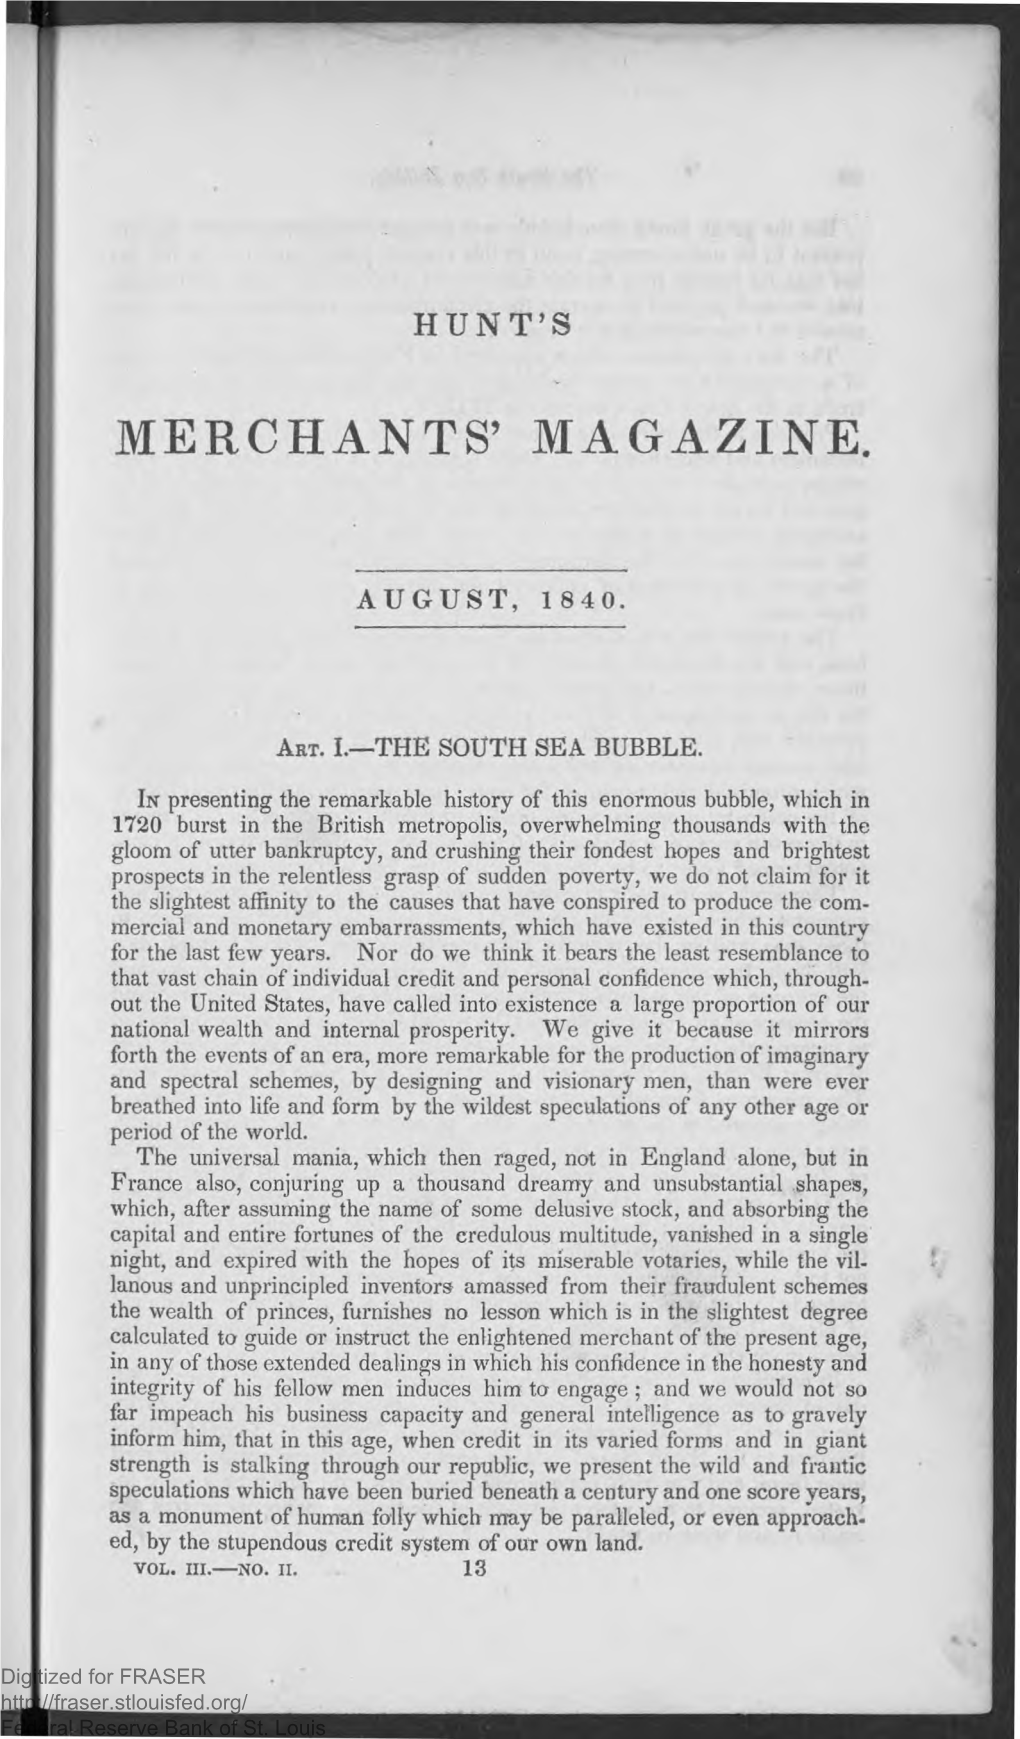 Merchants' Magazine: August 1840, Vol. III, No. II